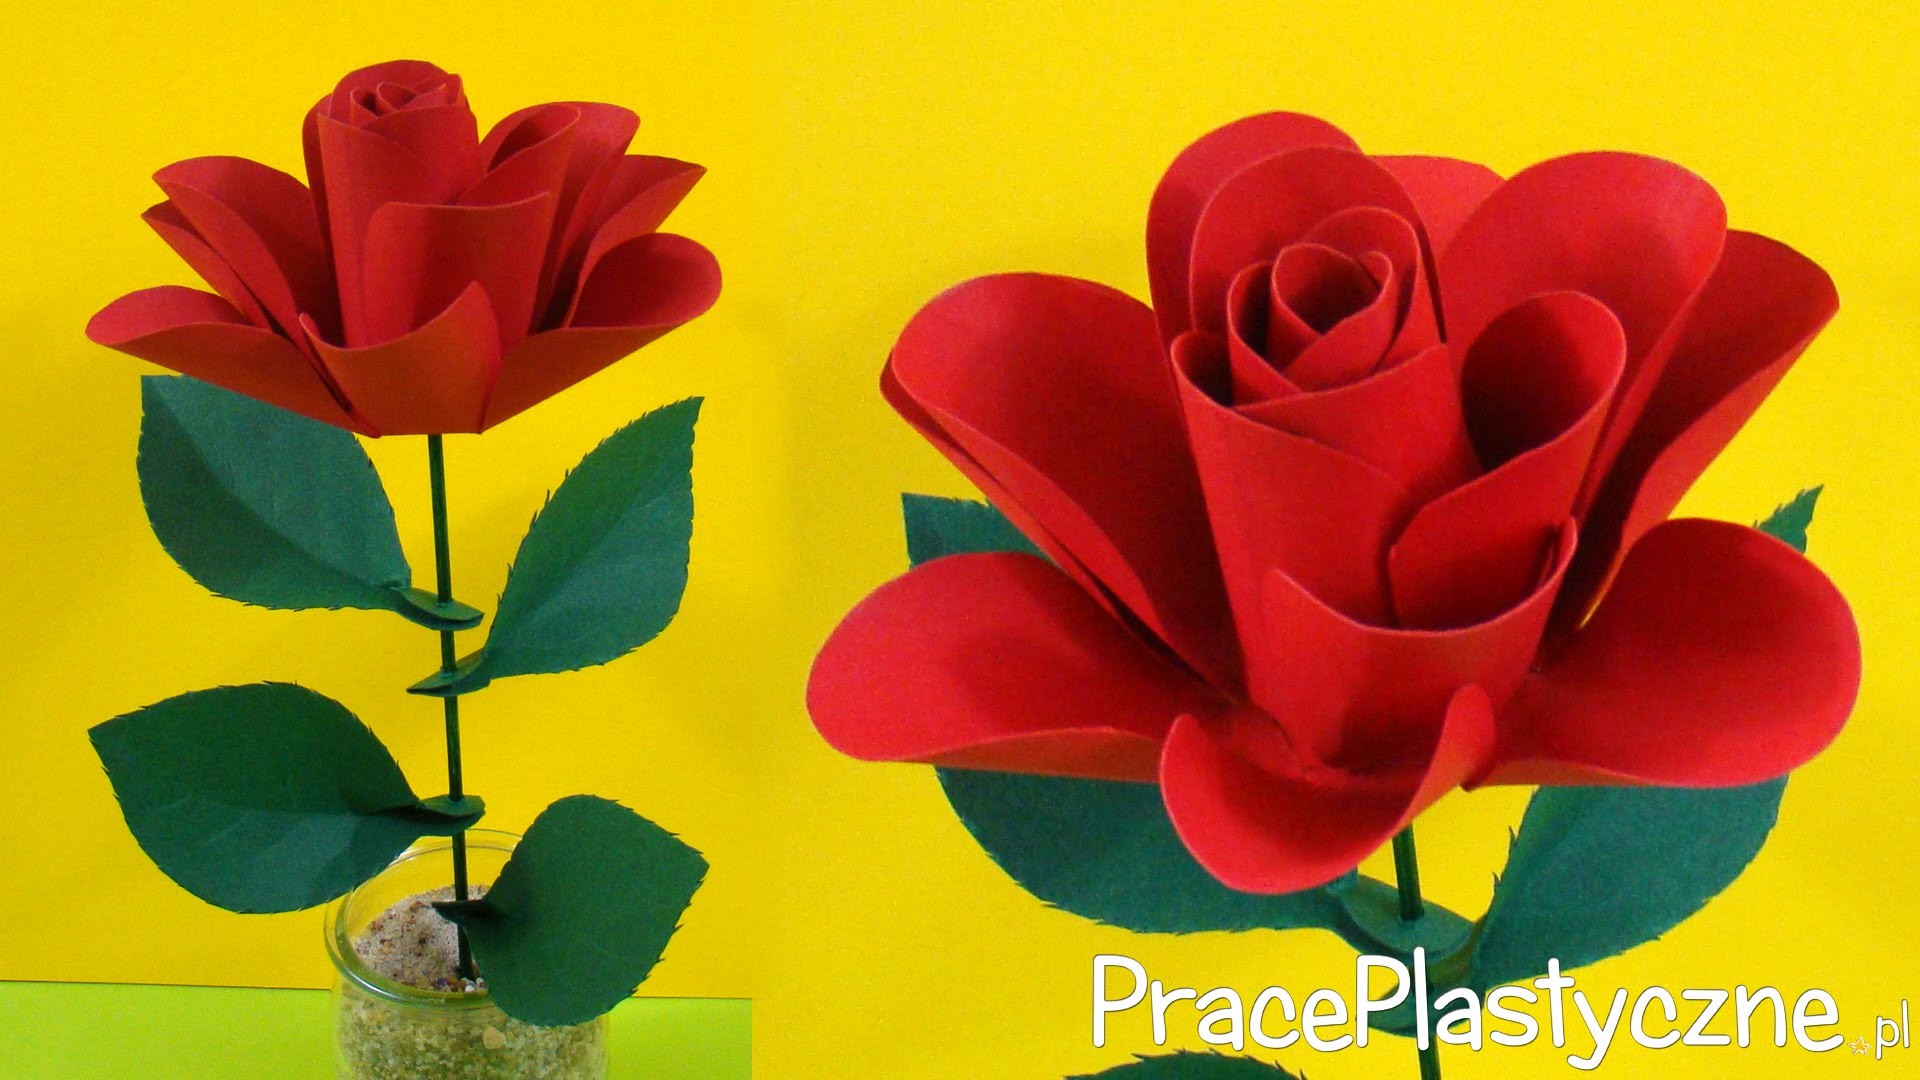 Jak zrobić różę z papieru?